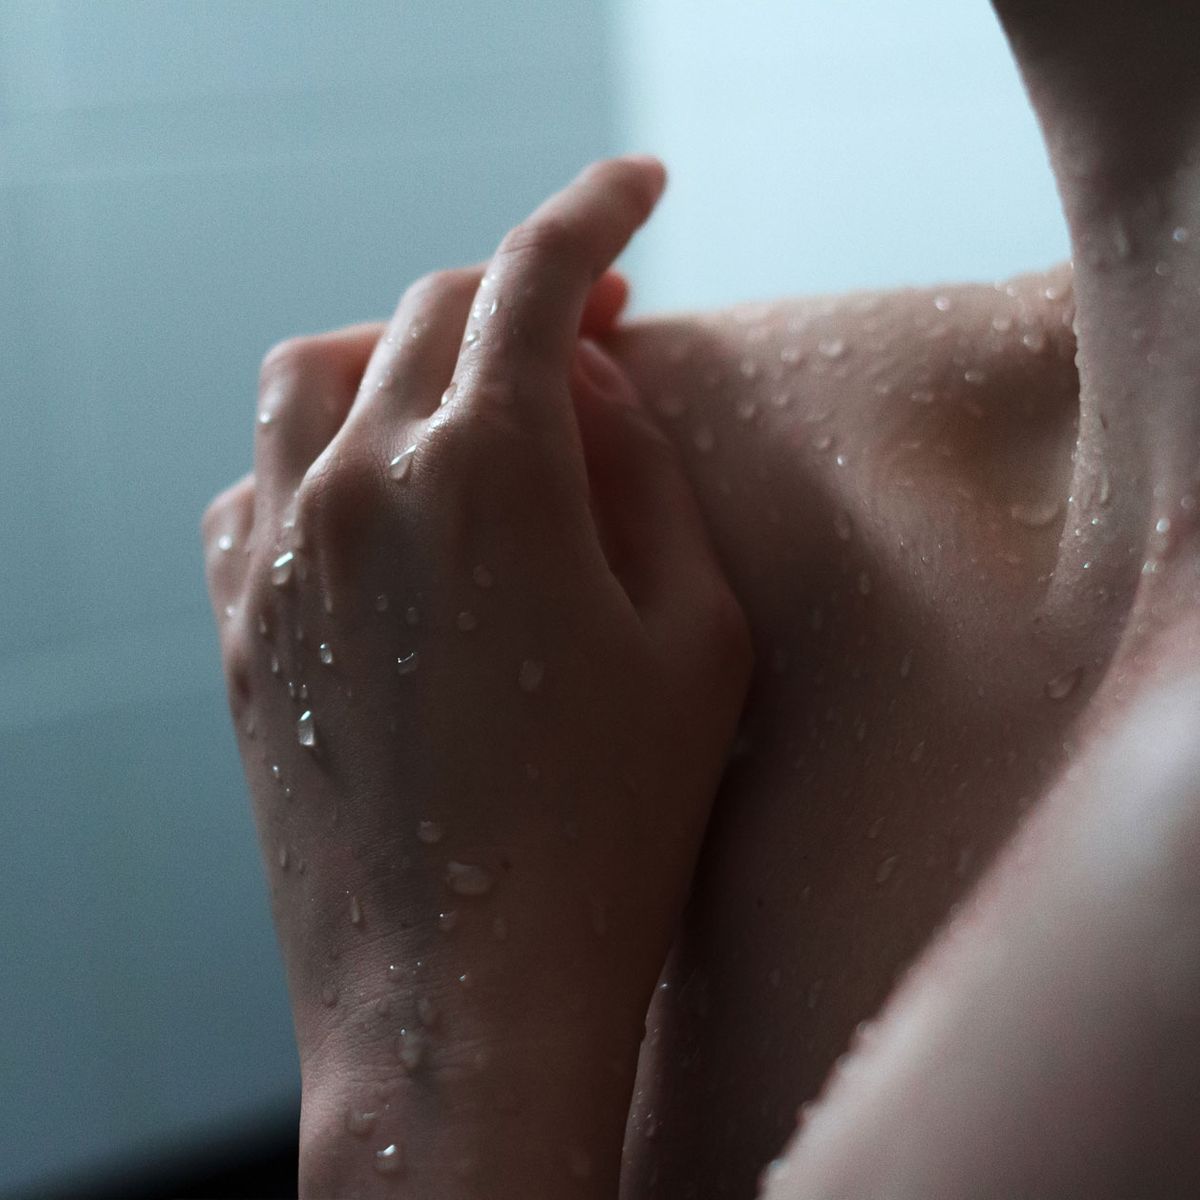 Sex unter der Dusche: Die besten Tipps für das nasse Liebesspiel